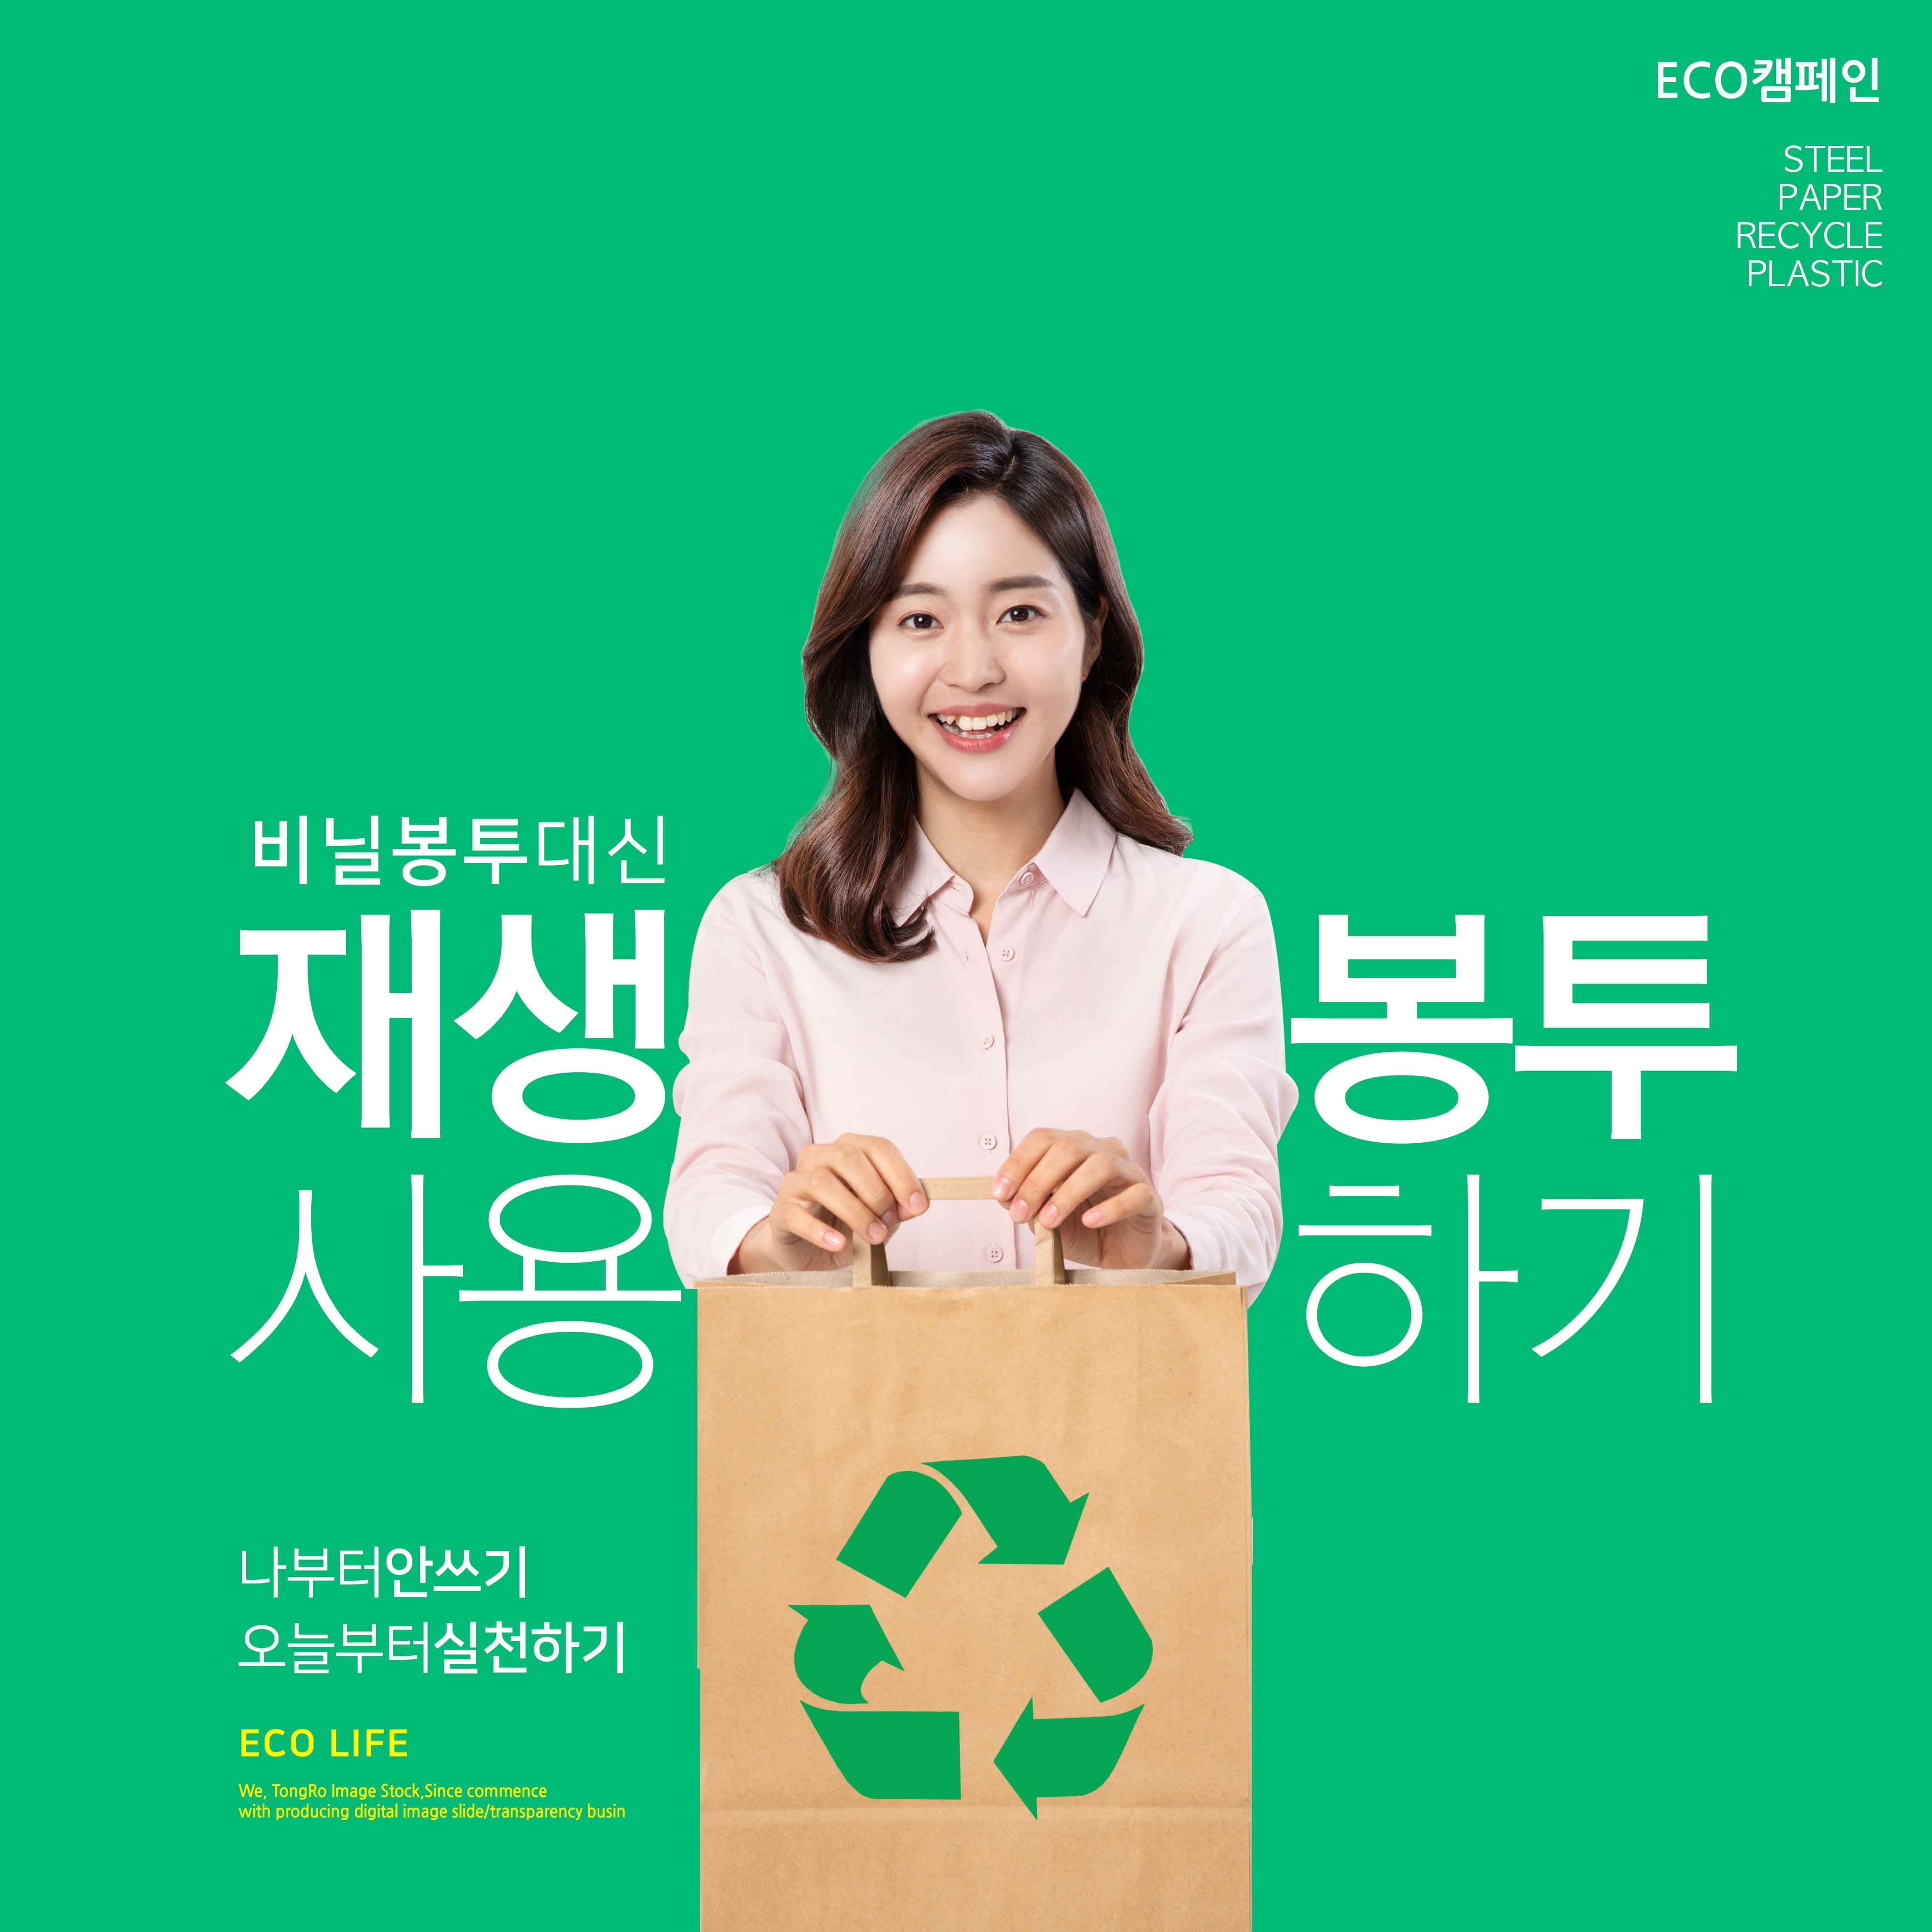 纸袋代替塑料袋主题环保生活推广海报素材插图